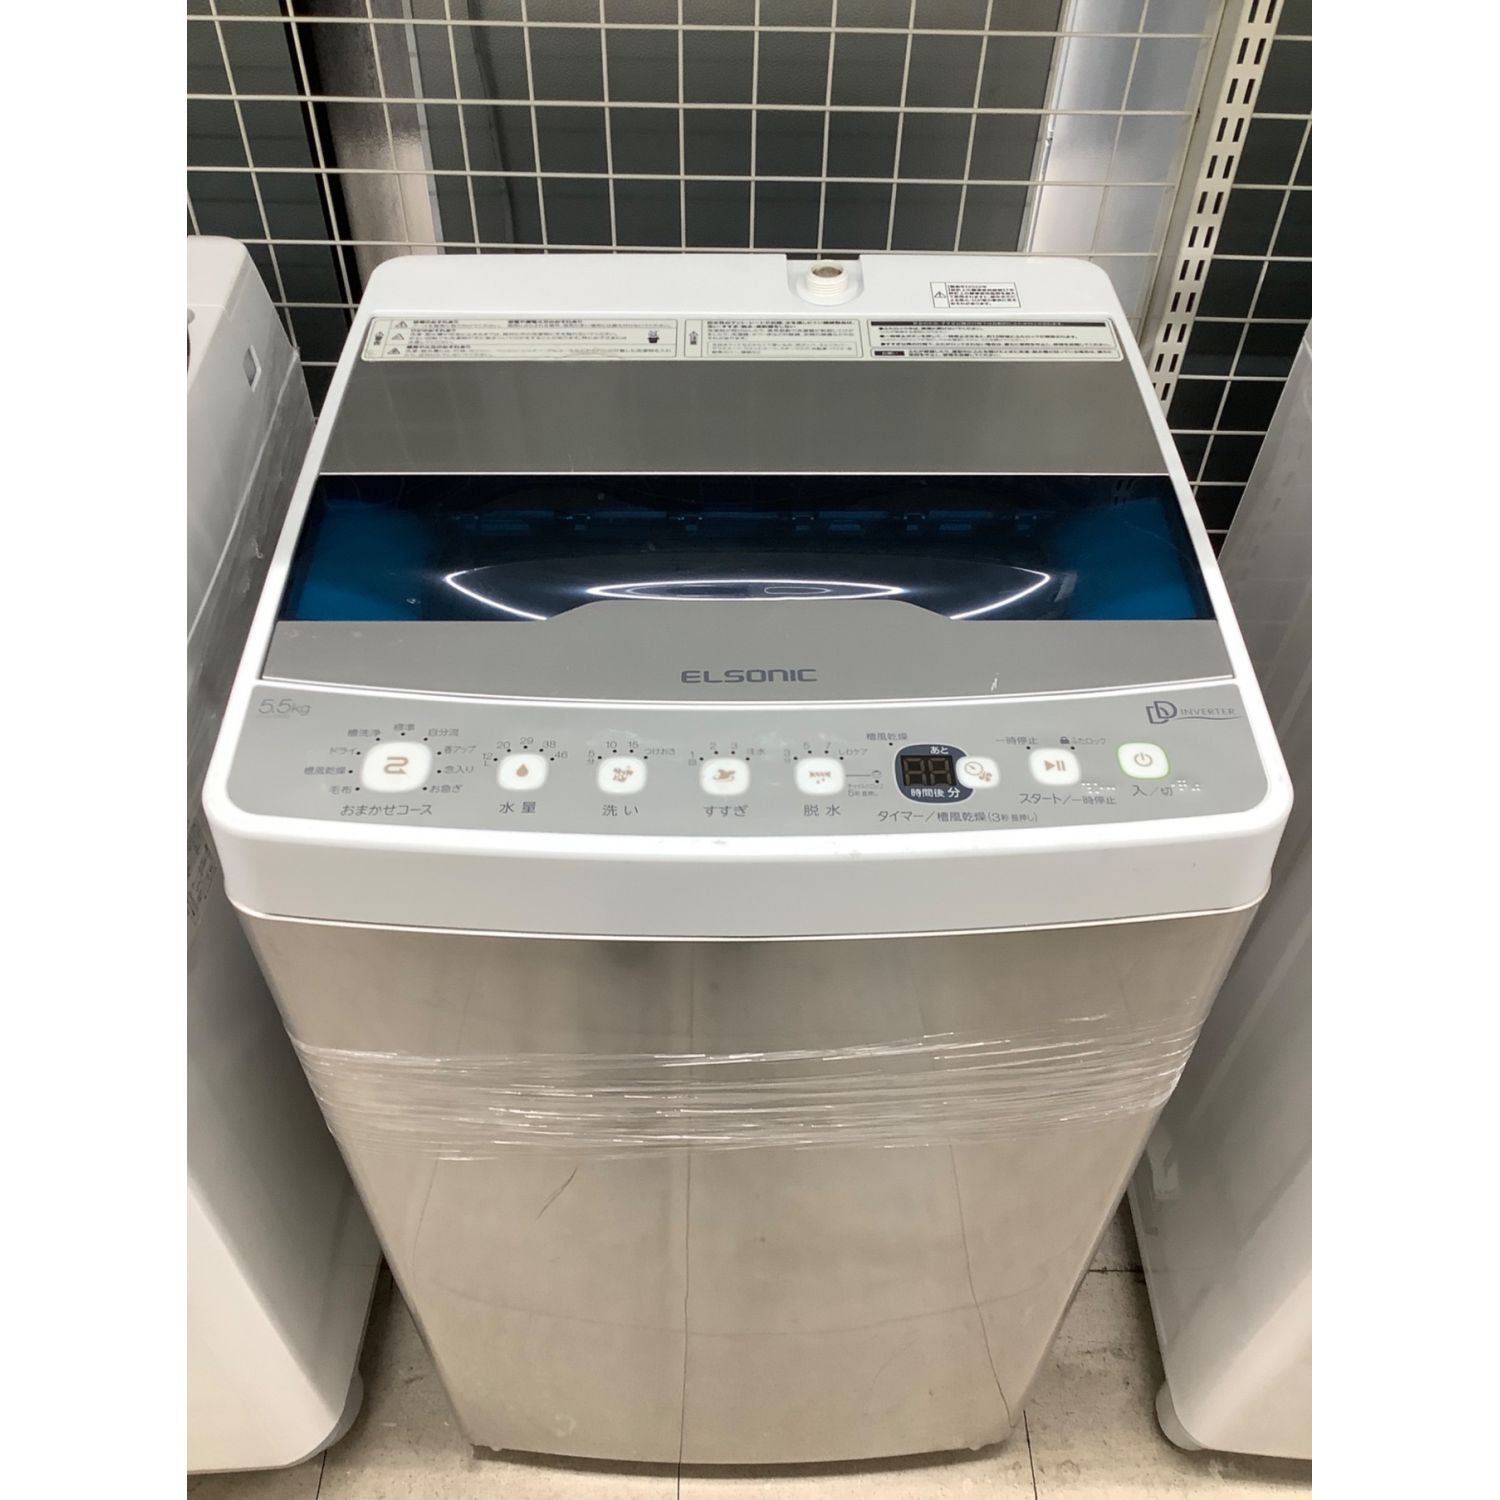 ELSONIC 全自動洗濯機 - 洗濯機